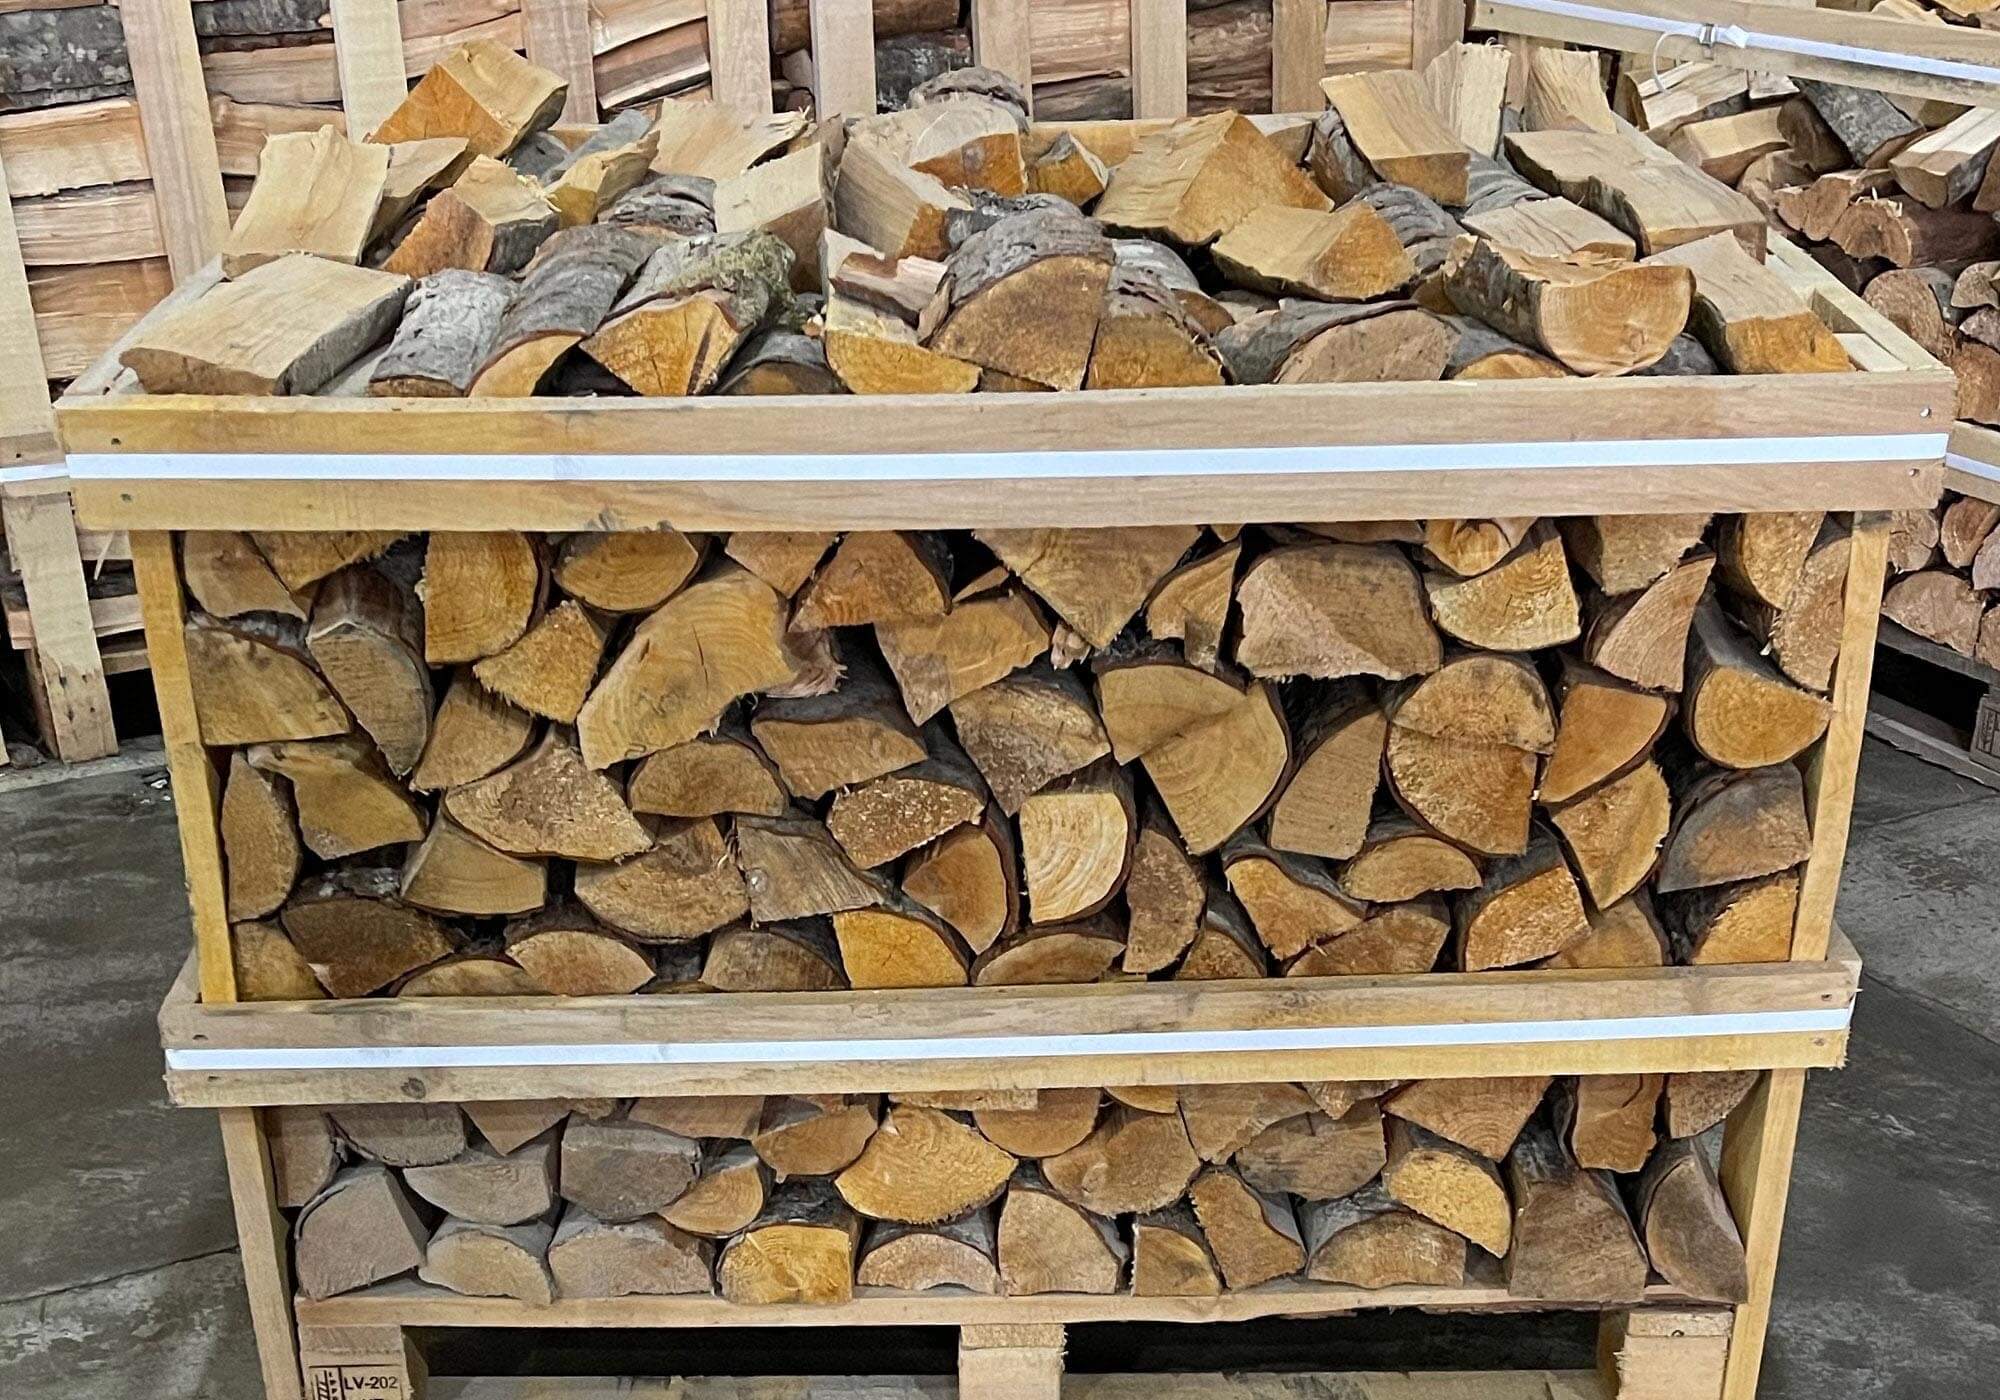 Kiln dried Alder wood for grilling